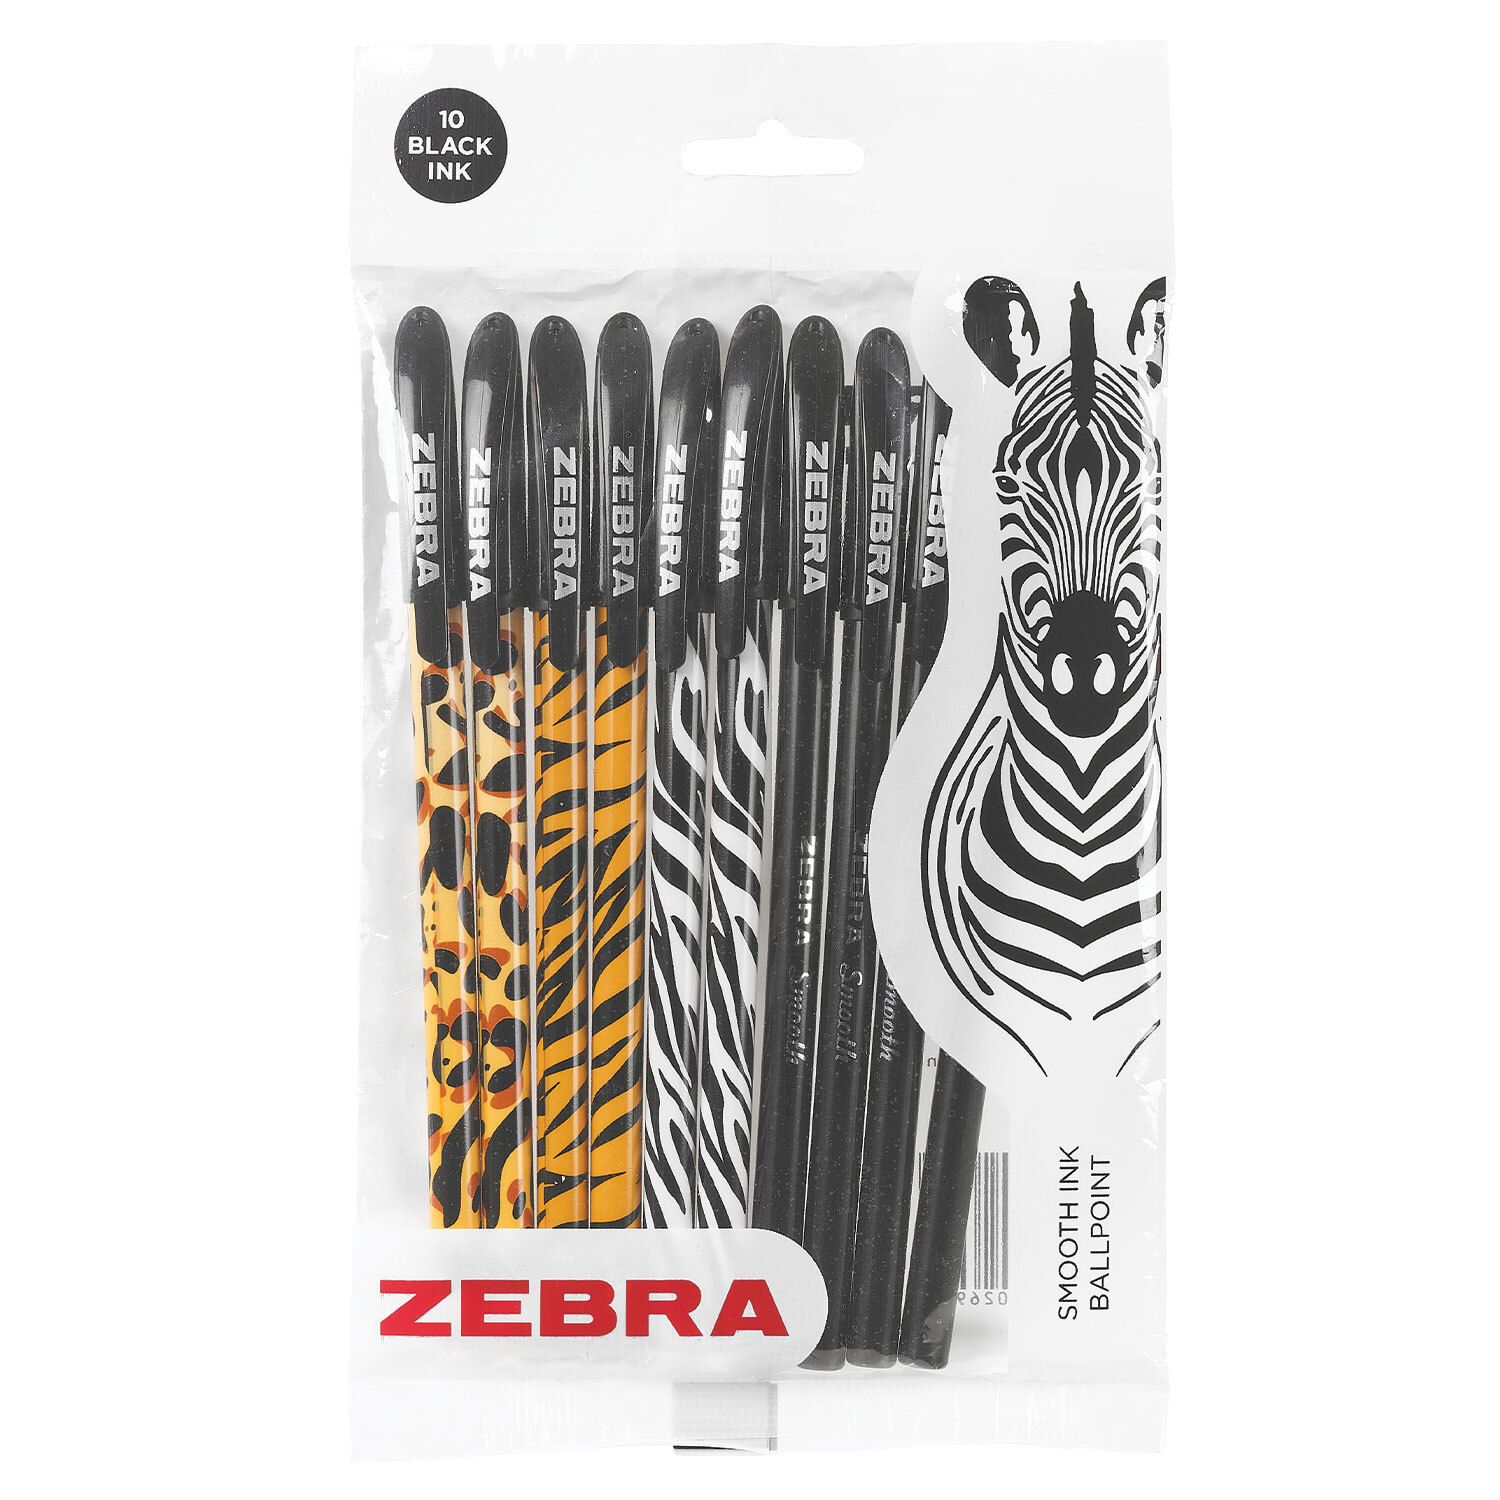 Zebra Black Ballpoint Pen 10 Pack Image